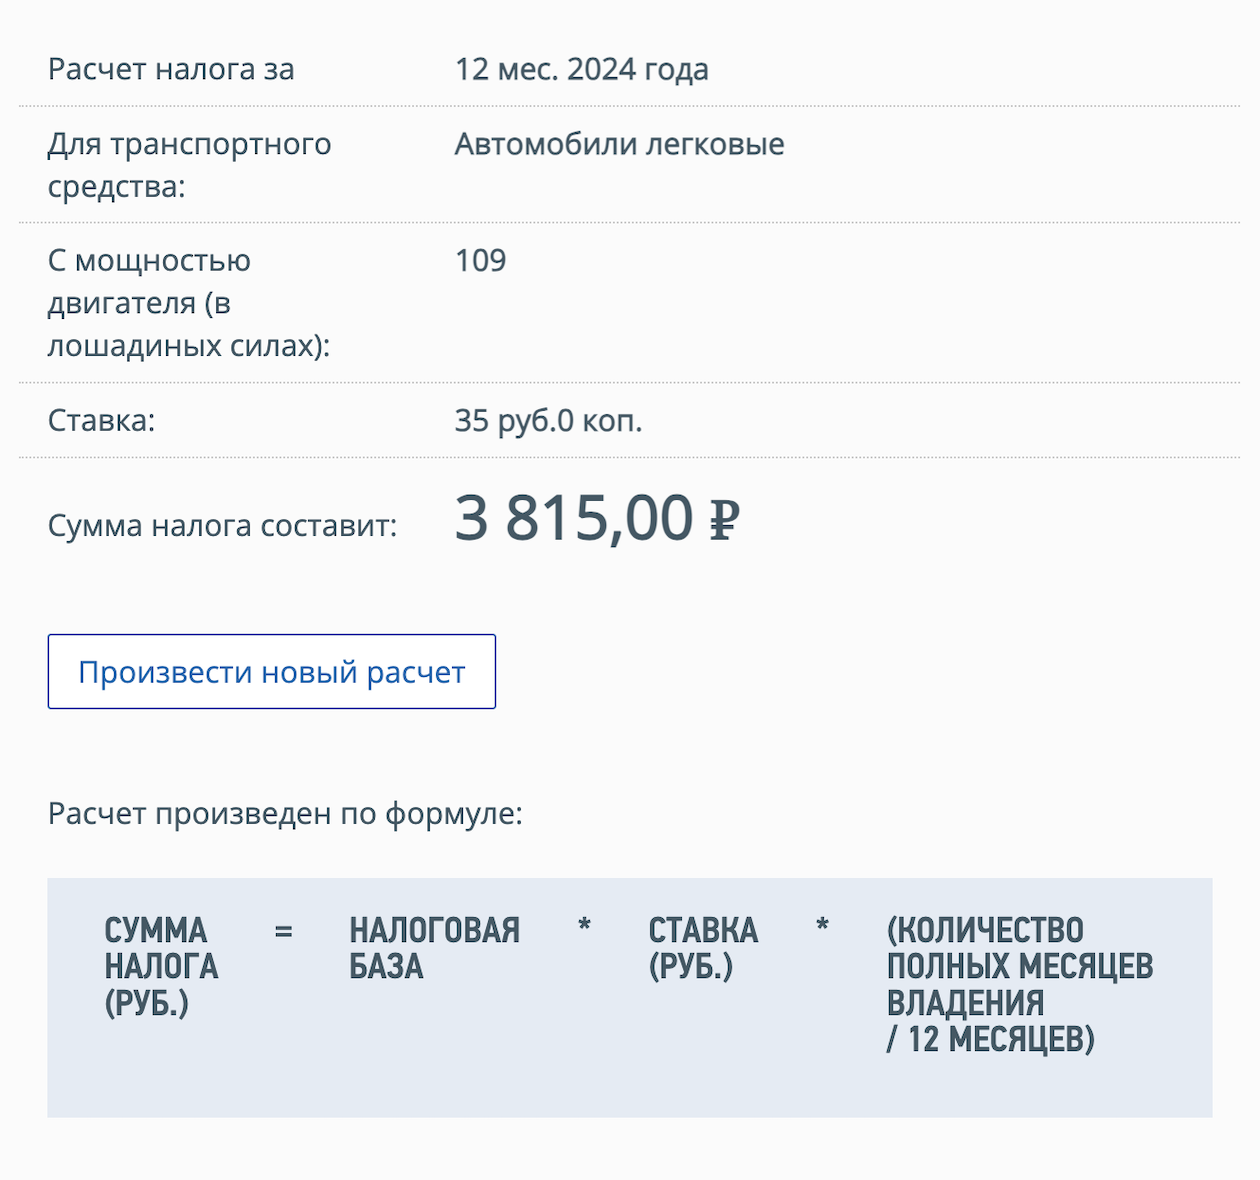 Пример расчета транспортного налога на автомобиль с двигателем 109 л. с., 78⁠-⁠й регион — Санкт⁠-⁠Петербург, владелец — гражданин без льгот